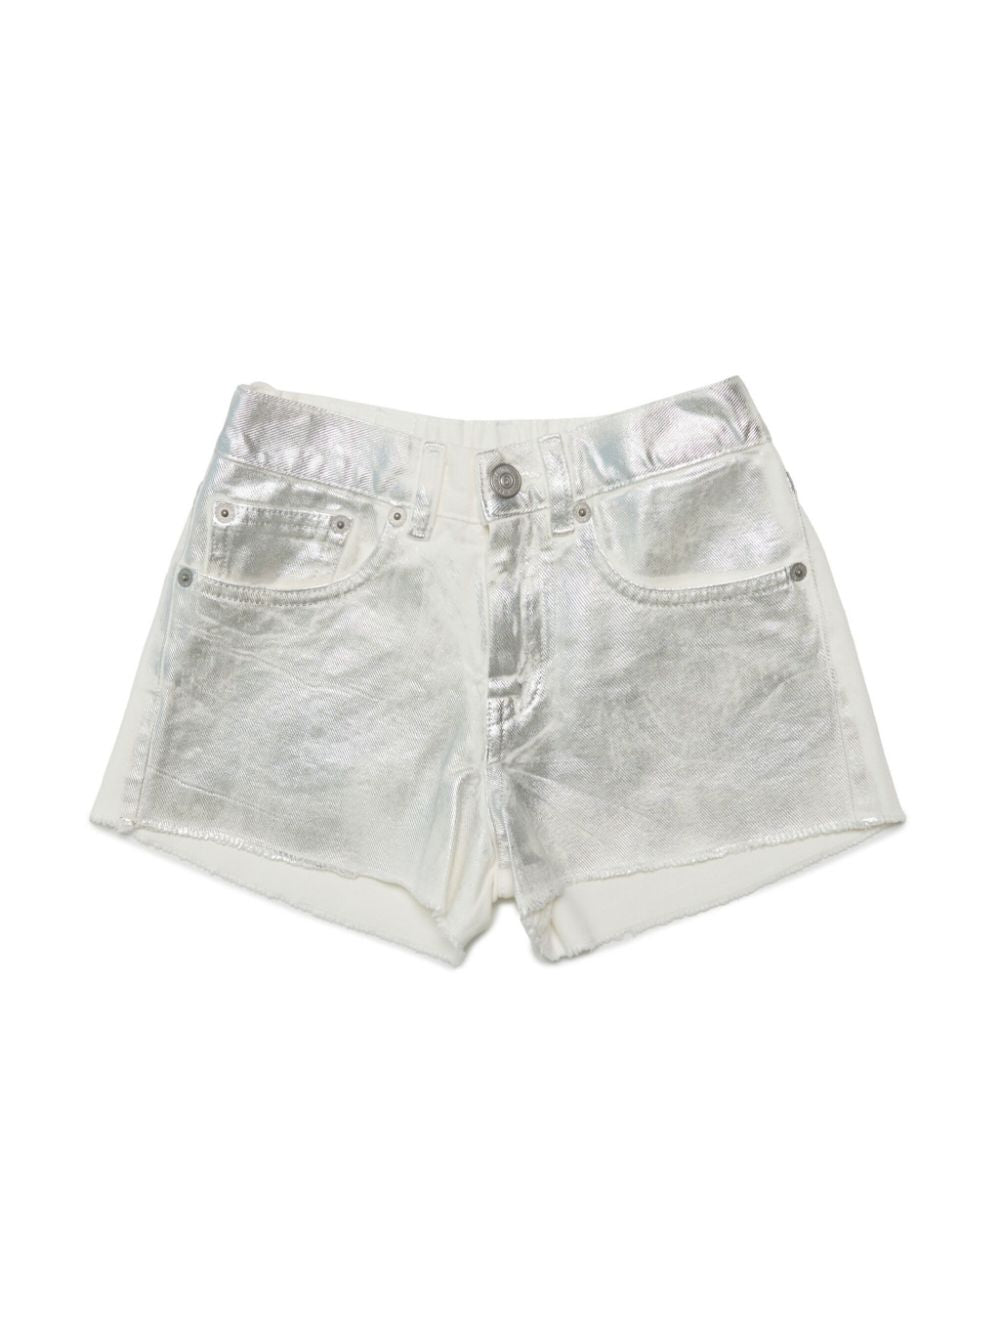 Shorts bianco unisex